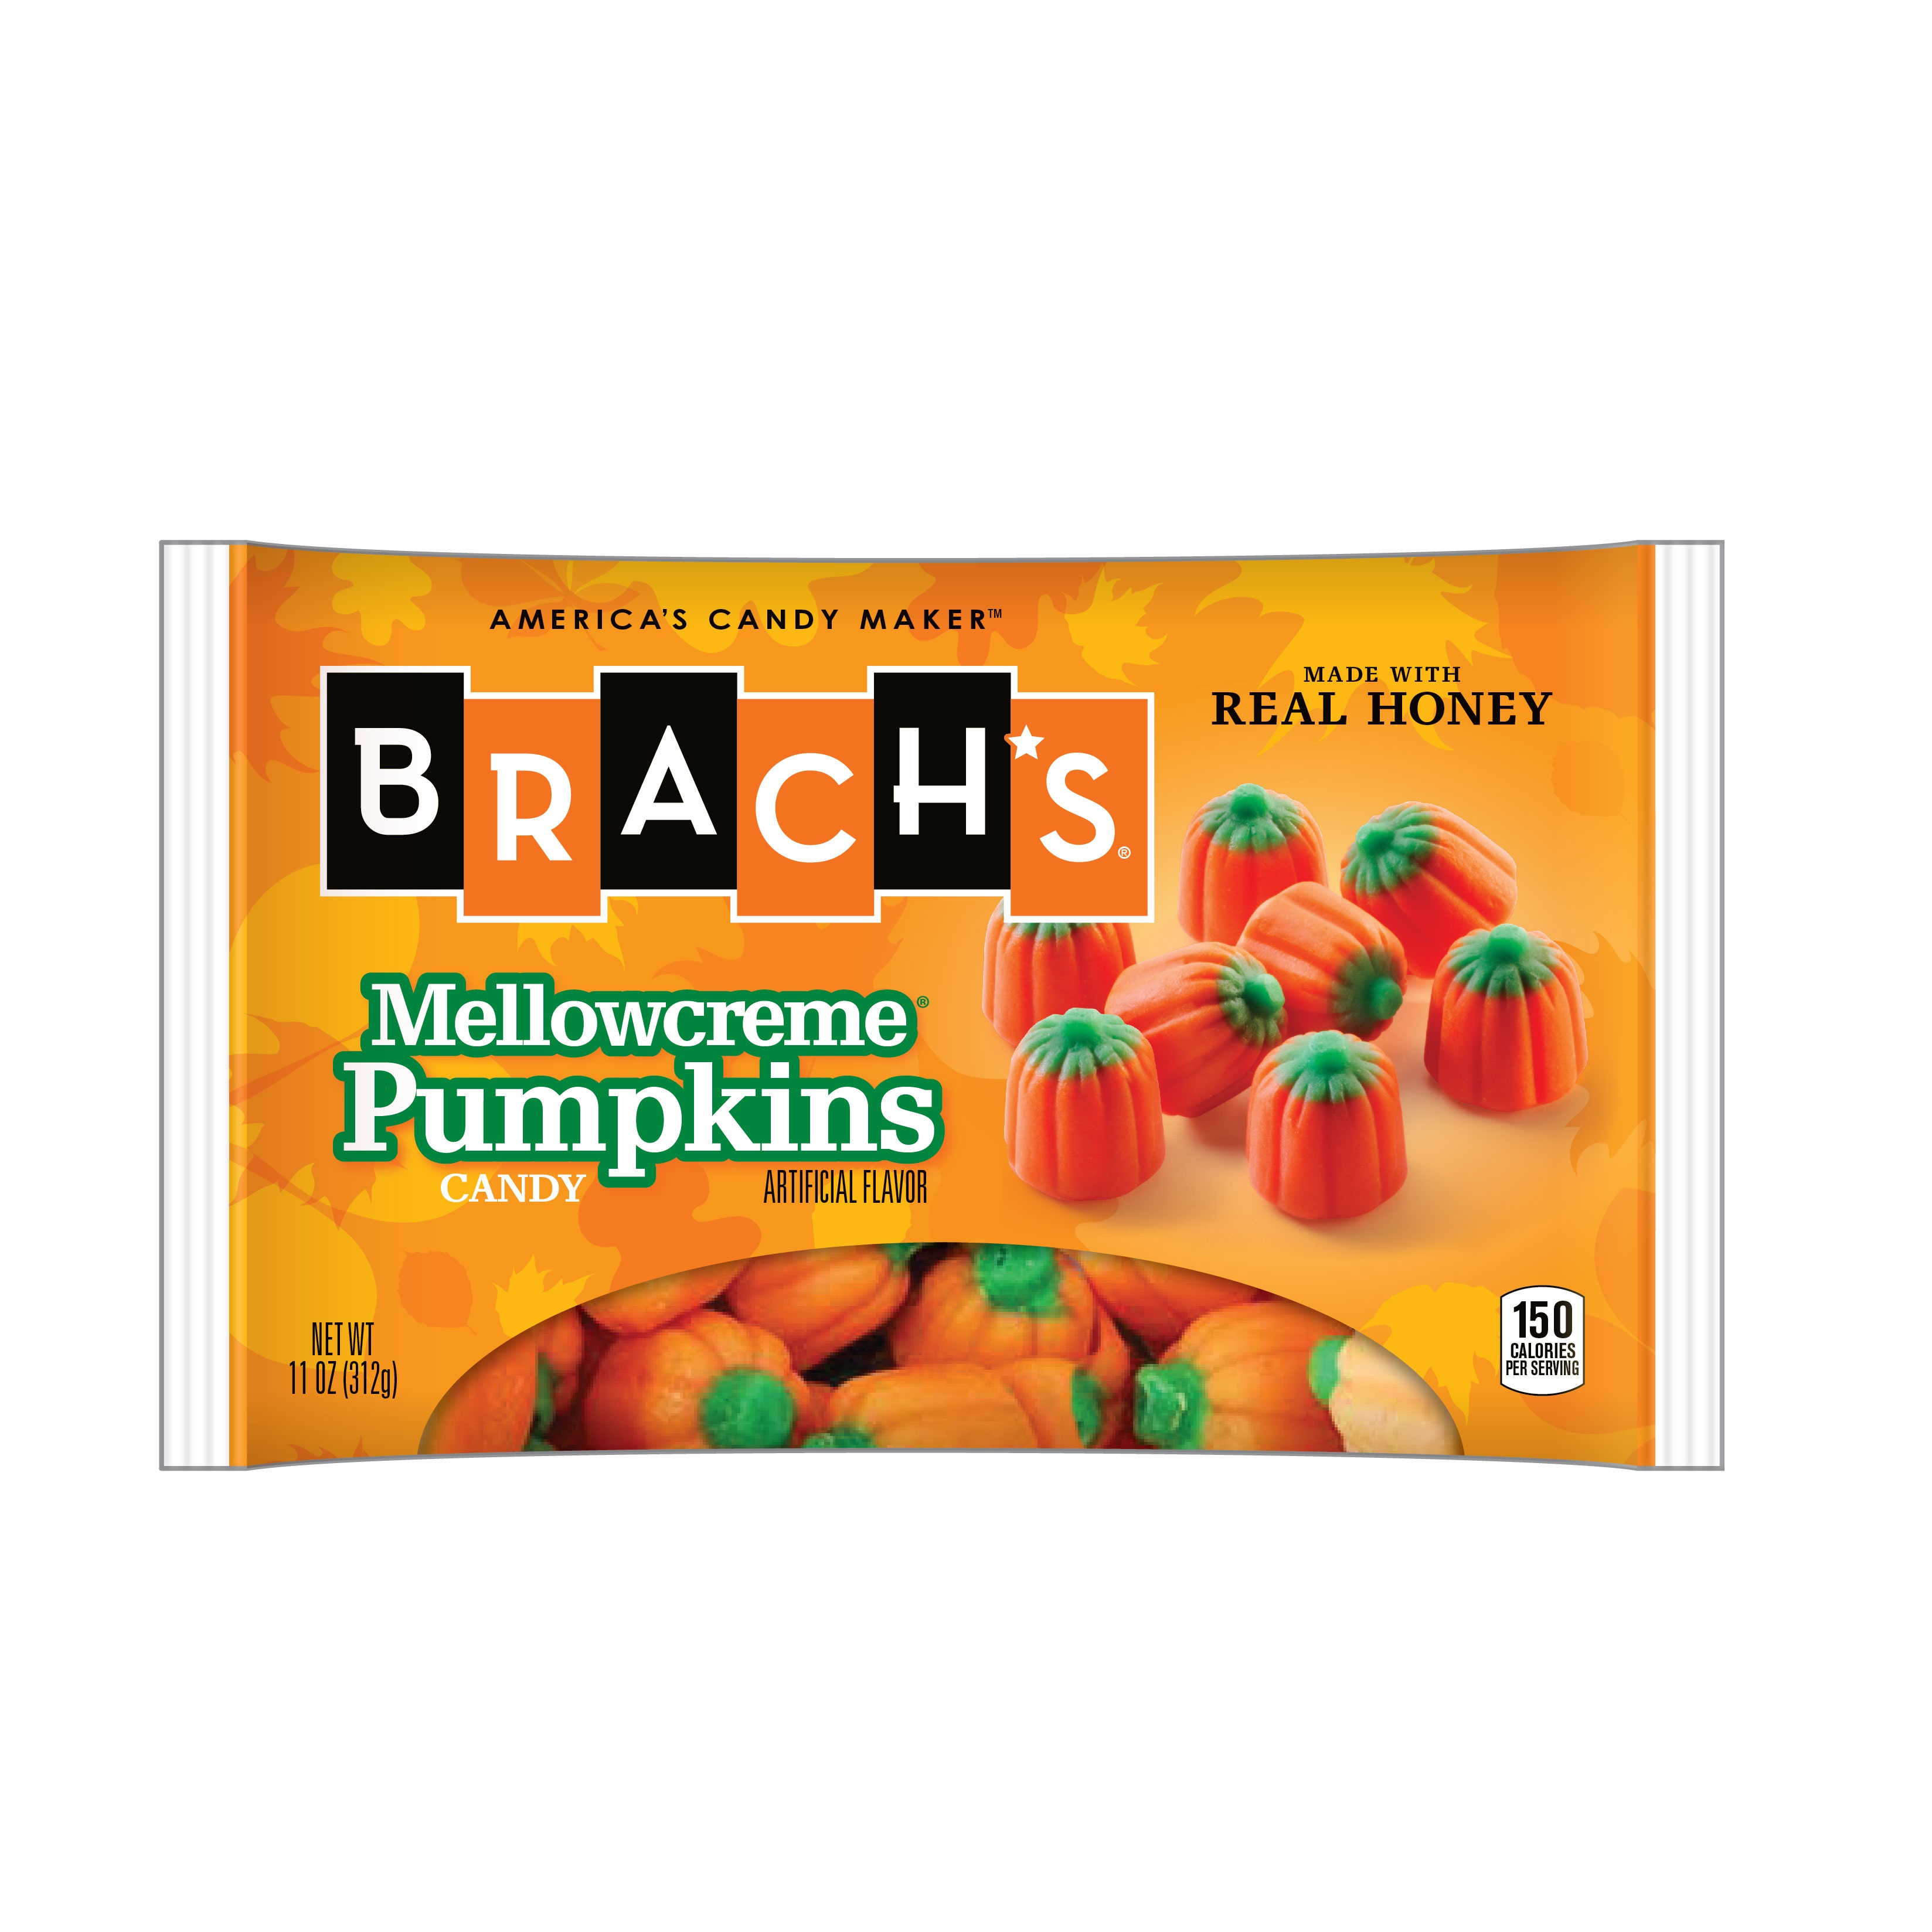 Brach's Mellowcreme Pumpkins Candy